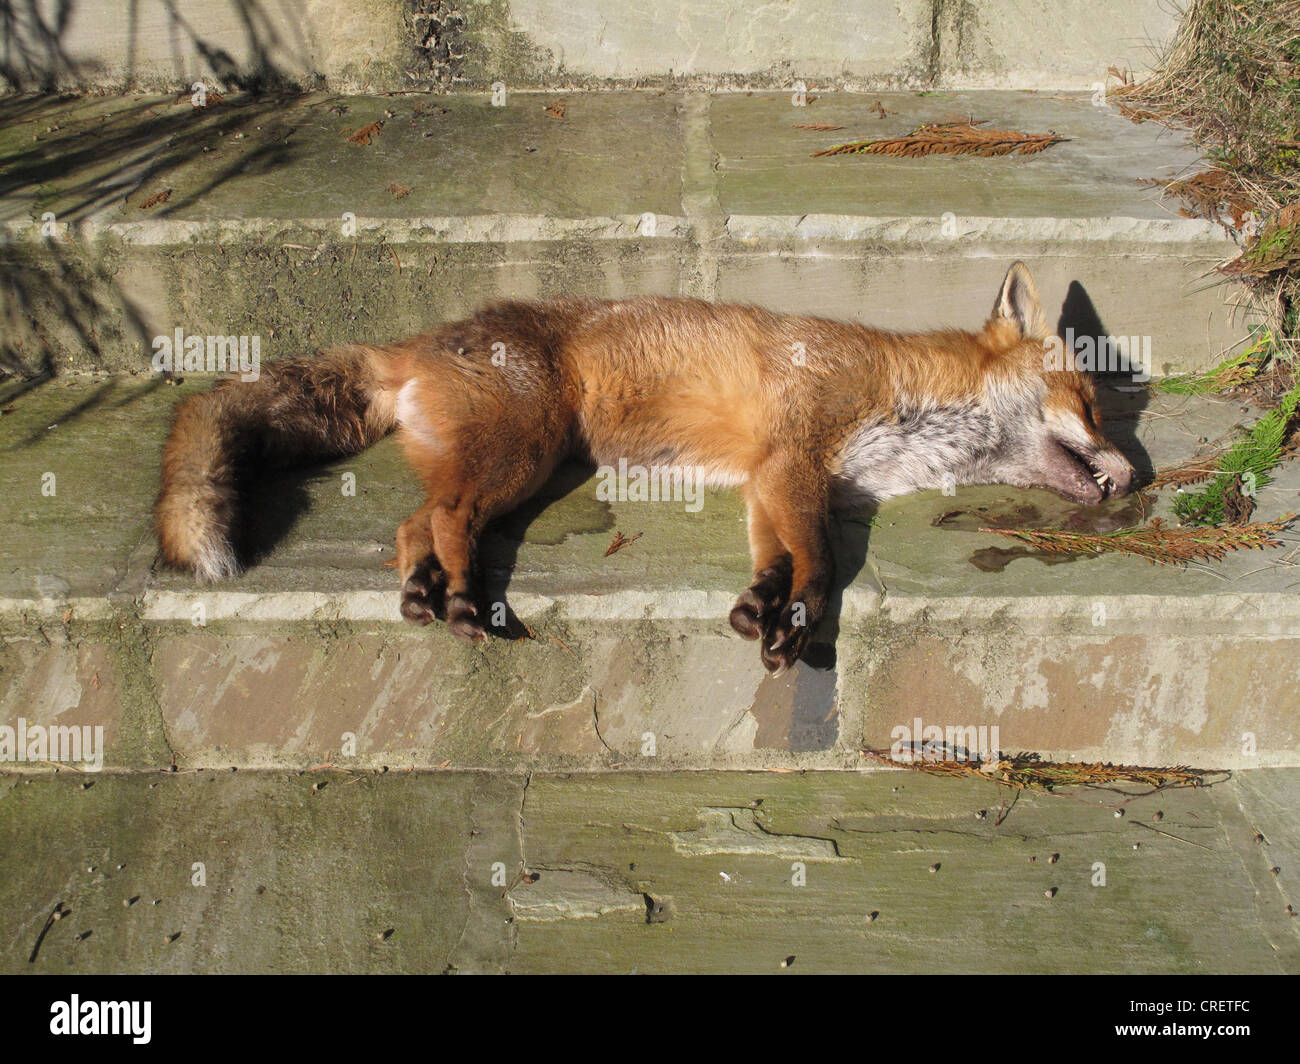 Un chien mort European red fox (Vulpes vulpes) a apparemment pas blessé sur des étapes de jardin Banque D'Images